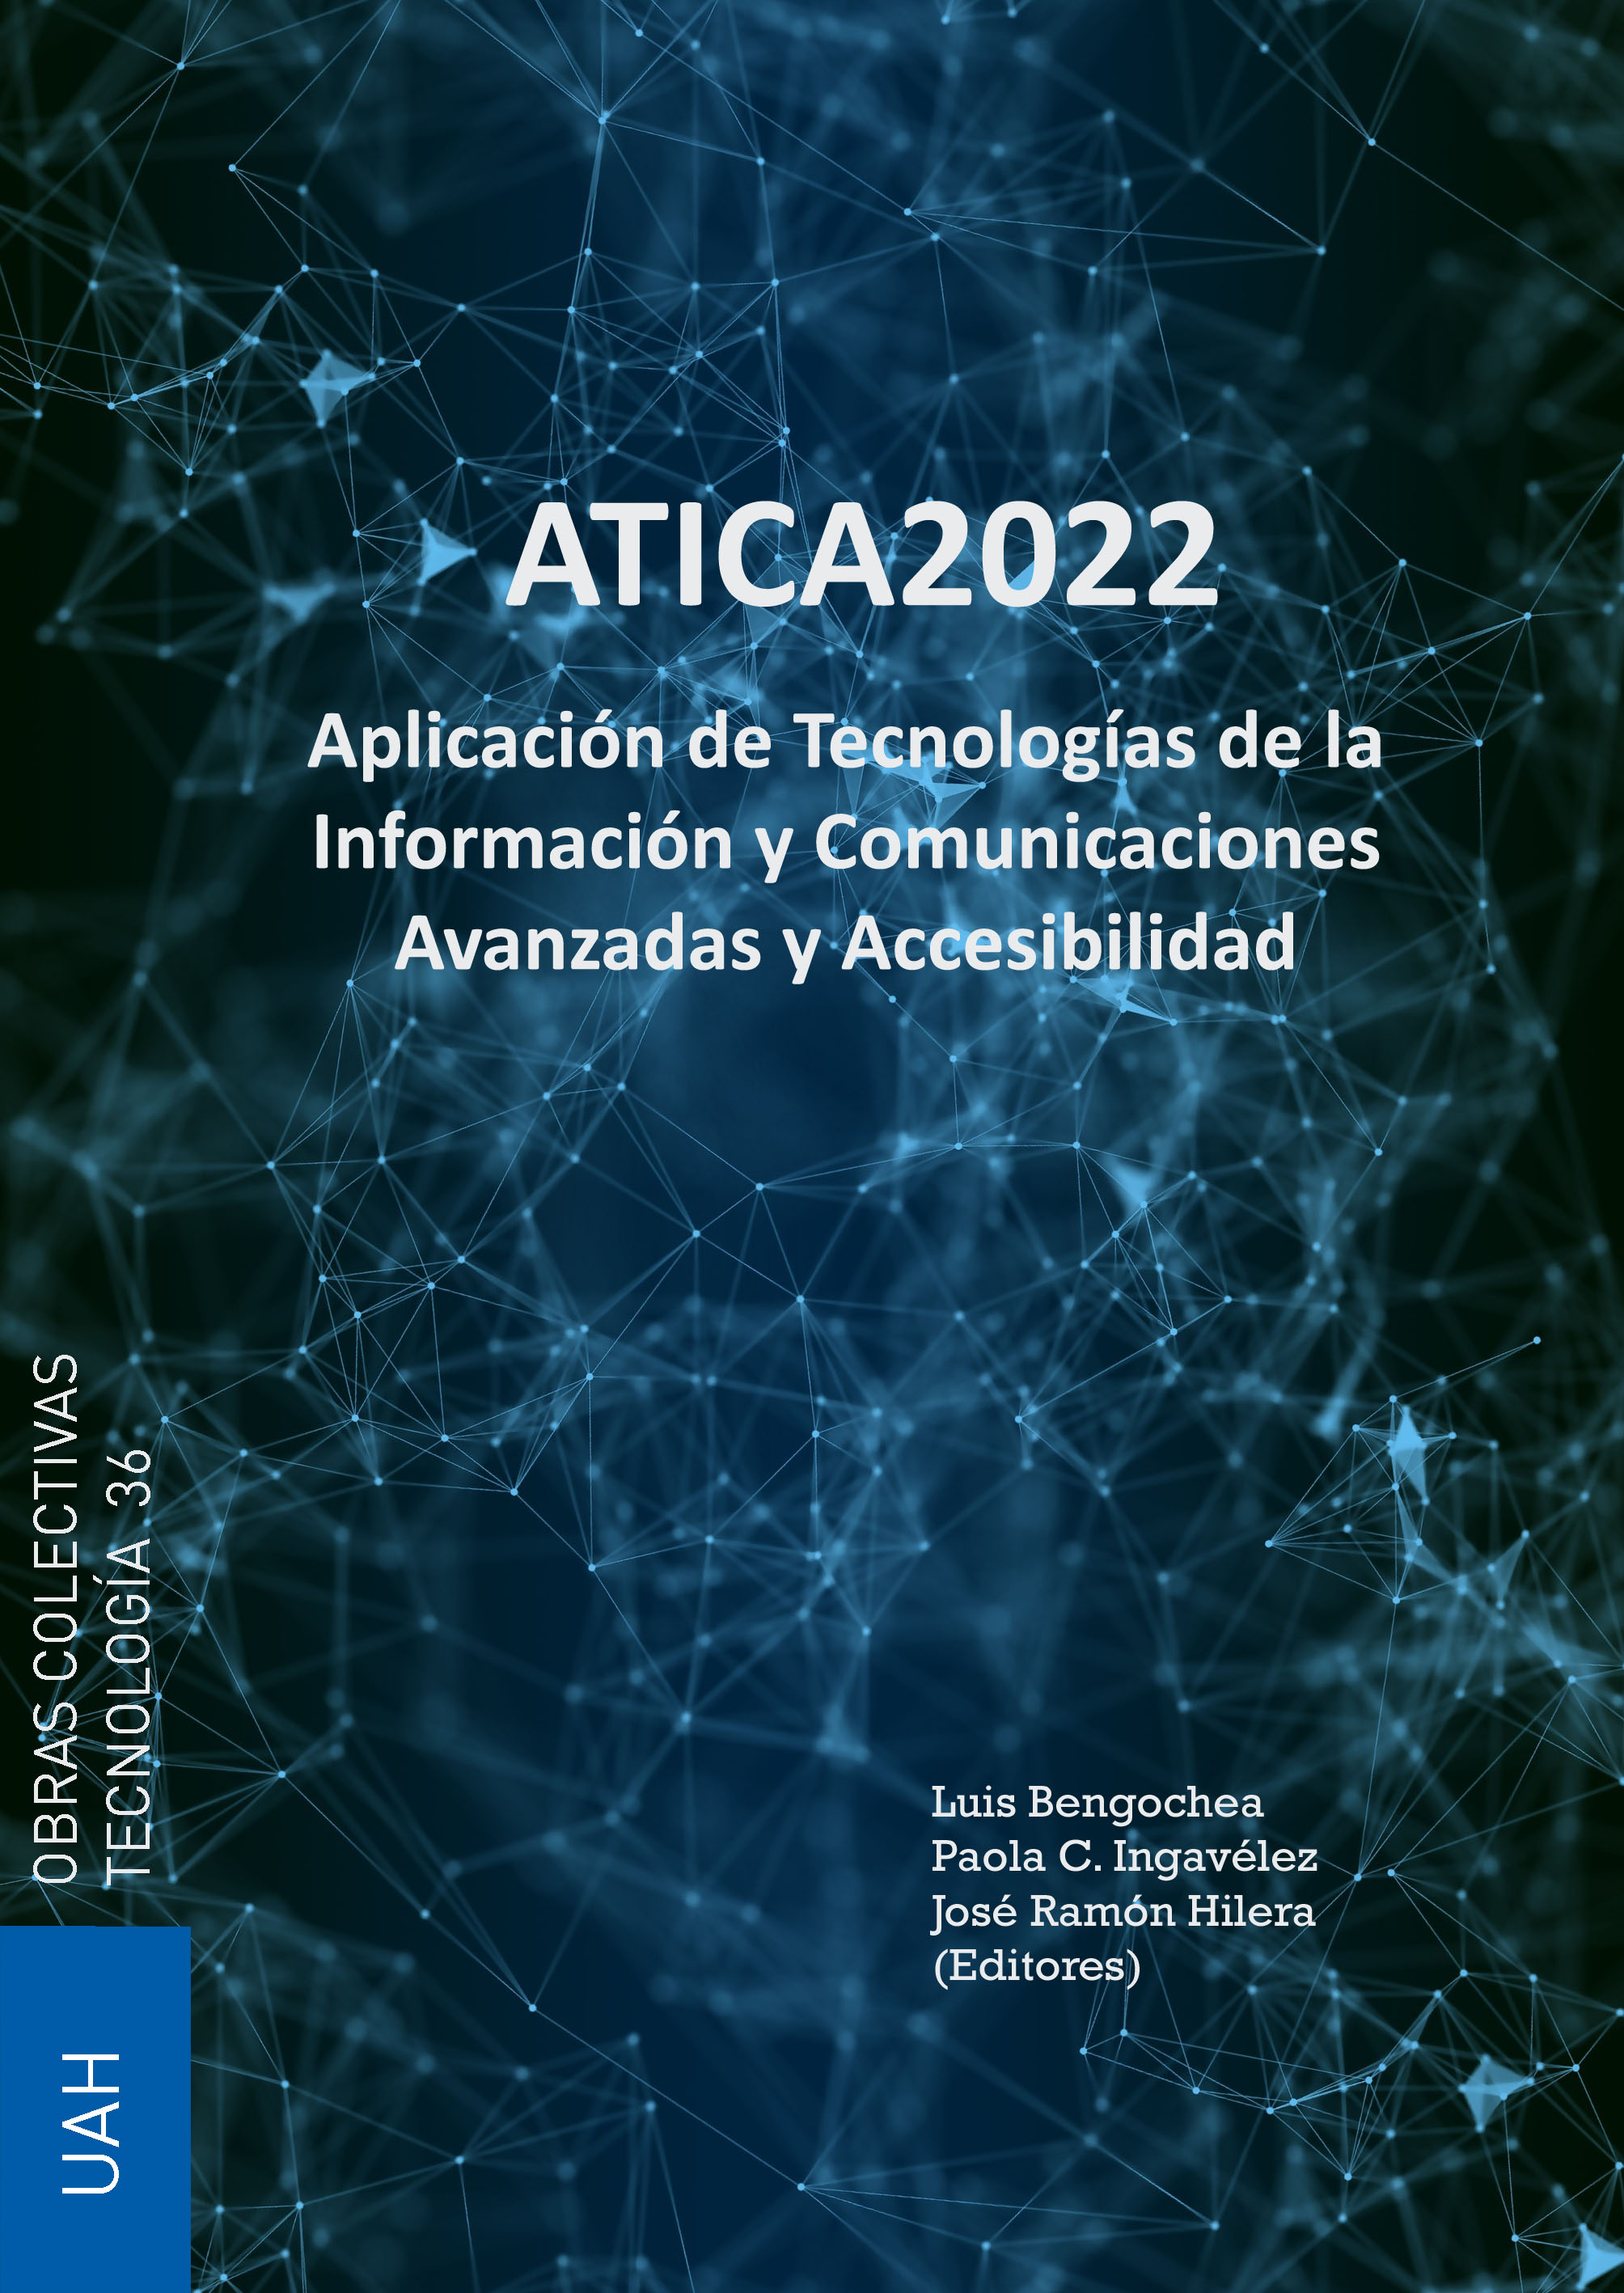 Aplicación de Tecnologías de la Información y Comunicaciones Avanzadas y Accesibilidad - ATICA 2022